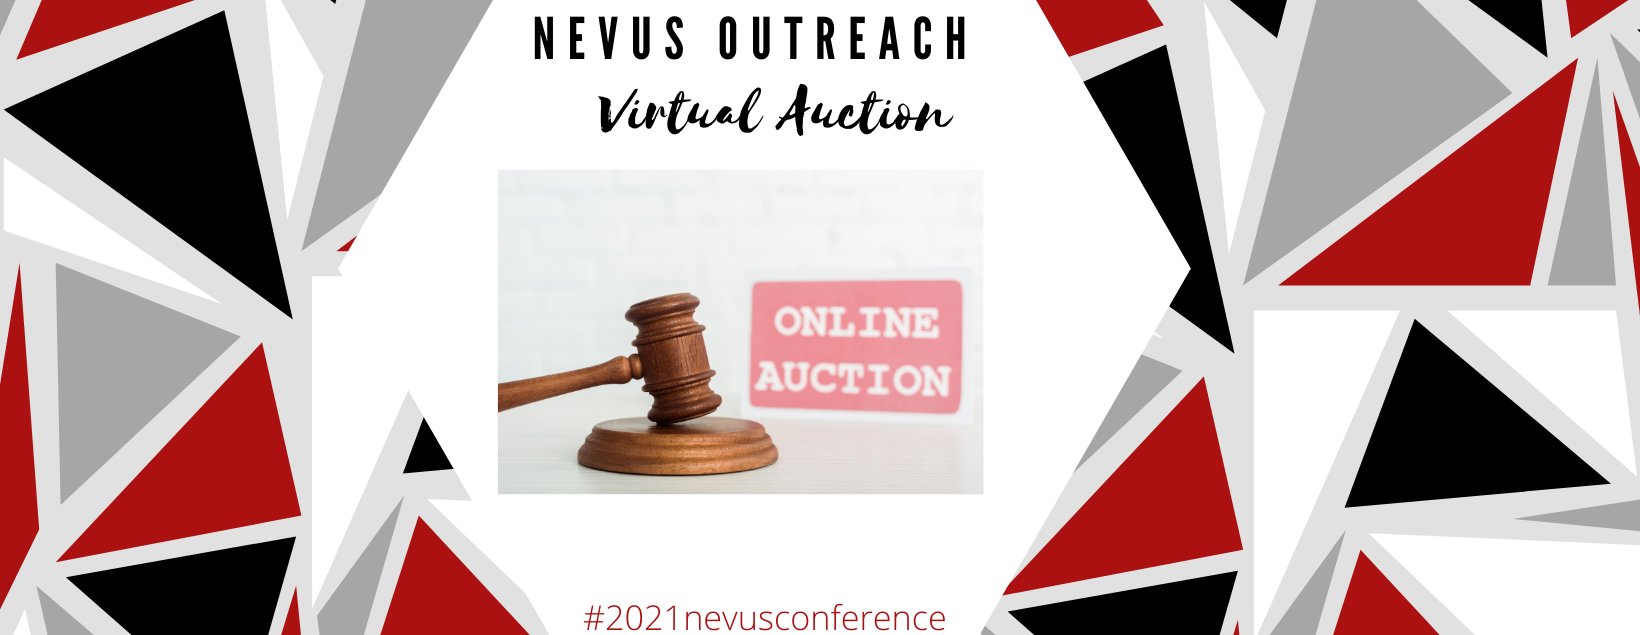 Nevus Outreach, Inc.